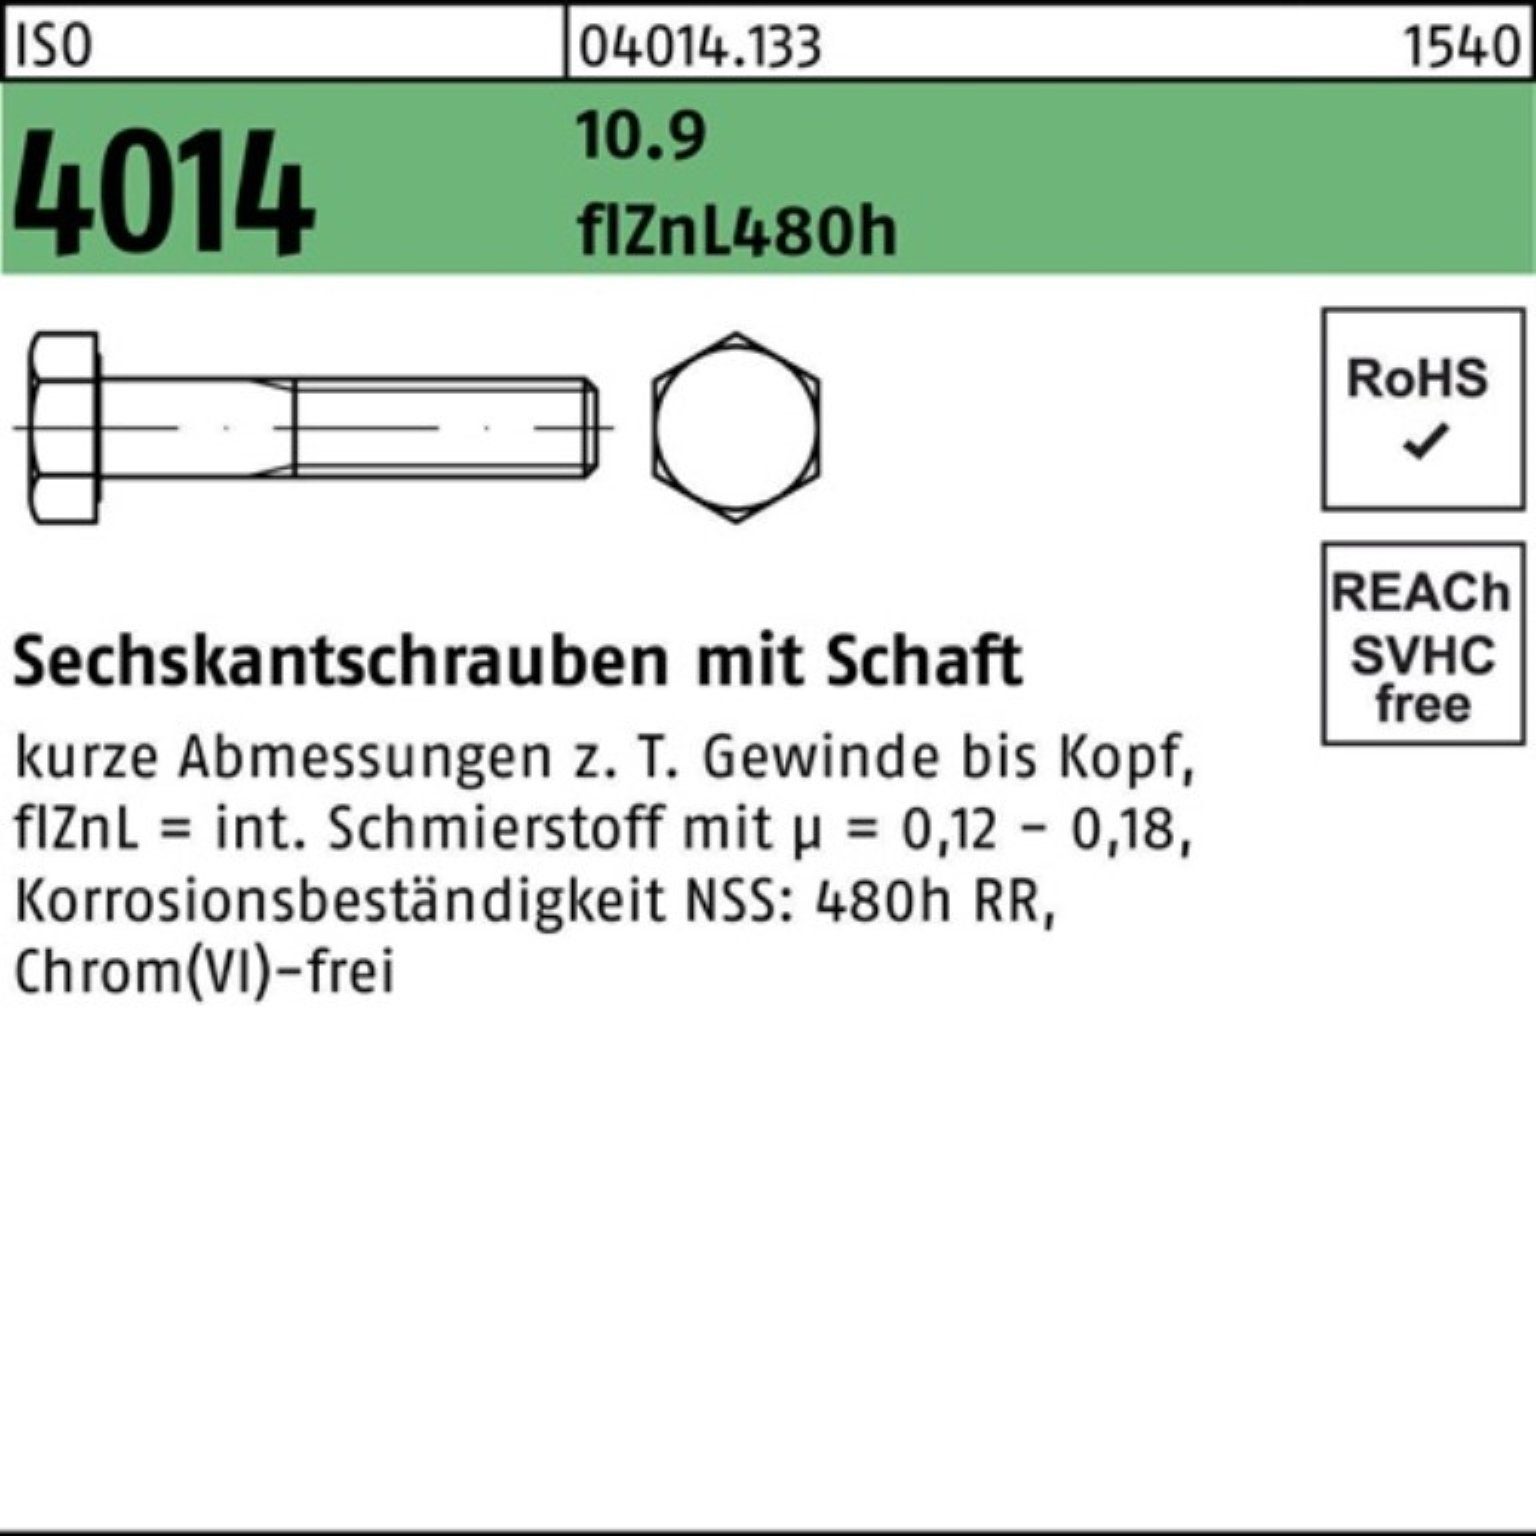 Bufab Sechskantschraube 100er 4014 zinklamelle Pack M12x Sechskantschraube ISO Schaft 100 10.9